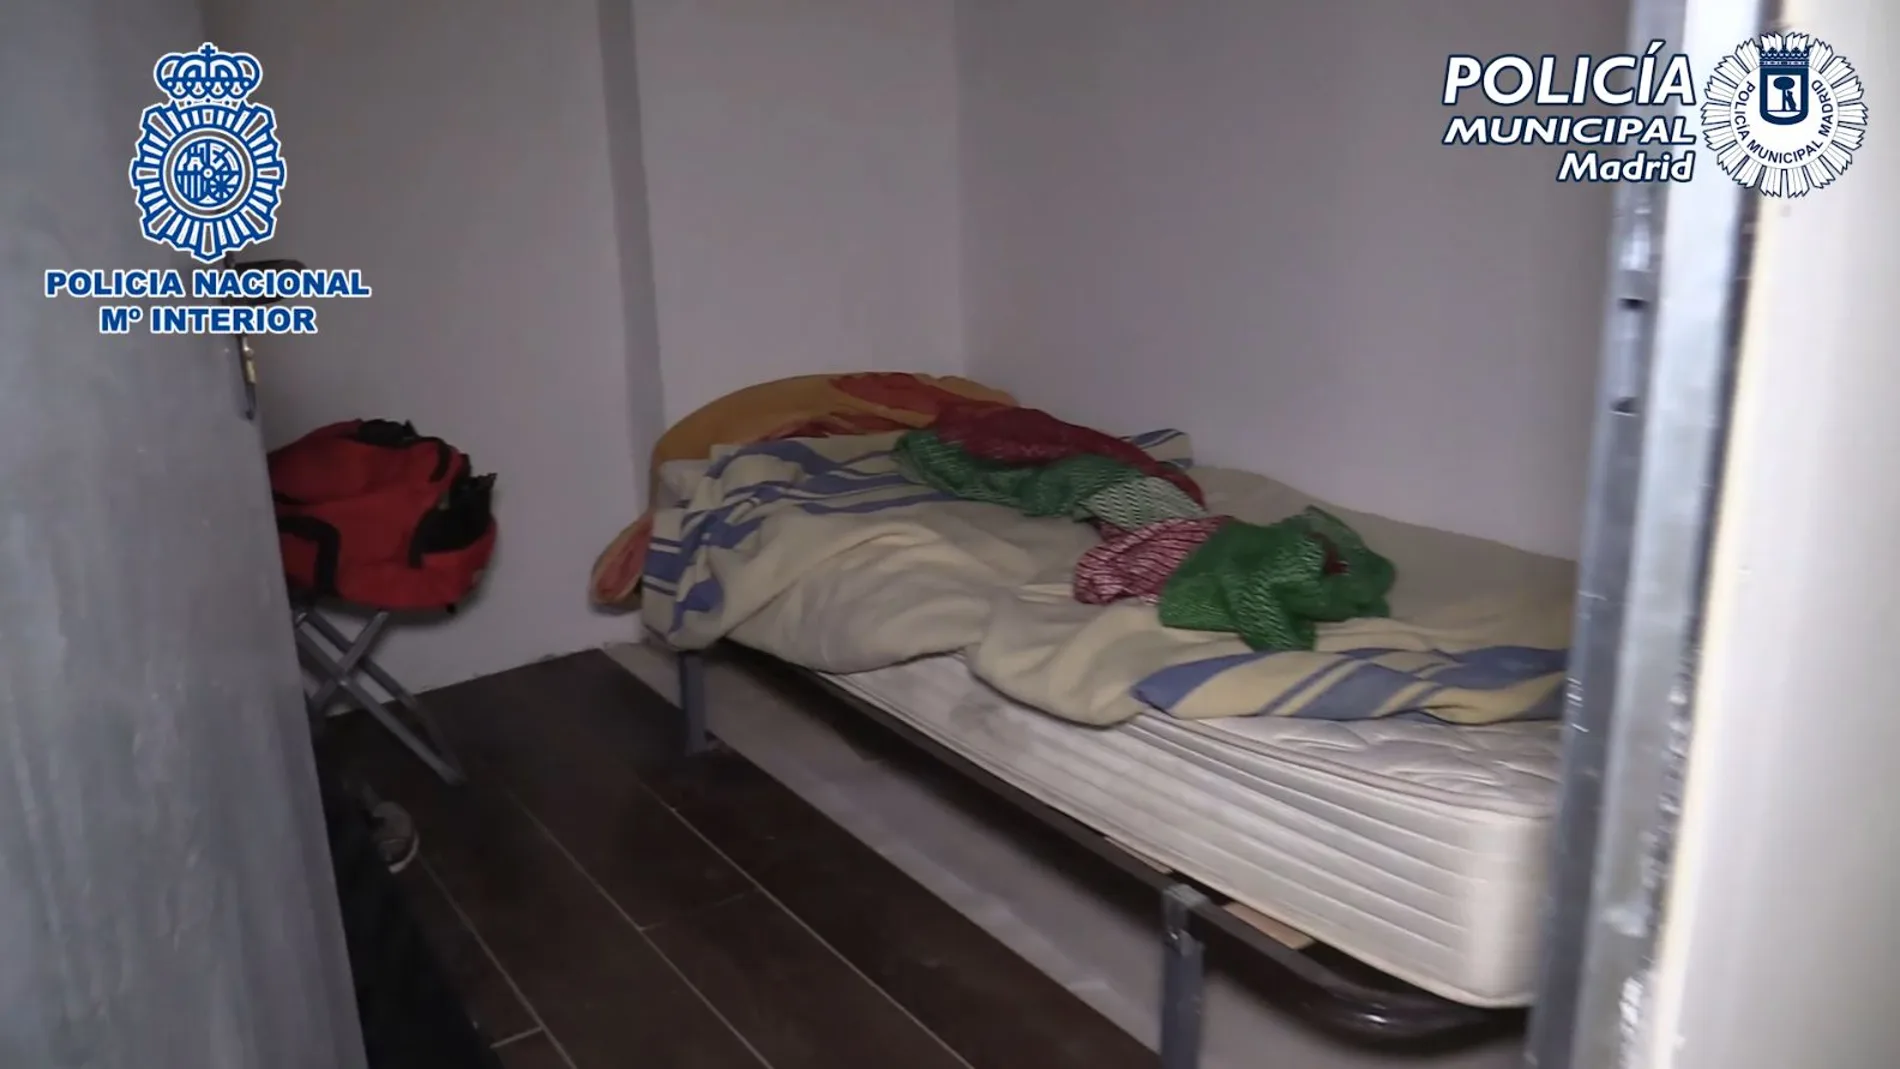 Liberados 61 inmigrantes que vivían entre ratas y colchones recogidos de la calle en trasteros de 9 m2